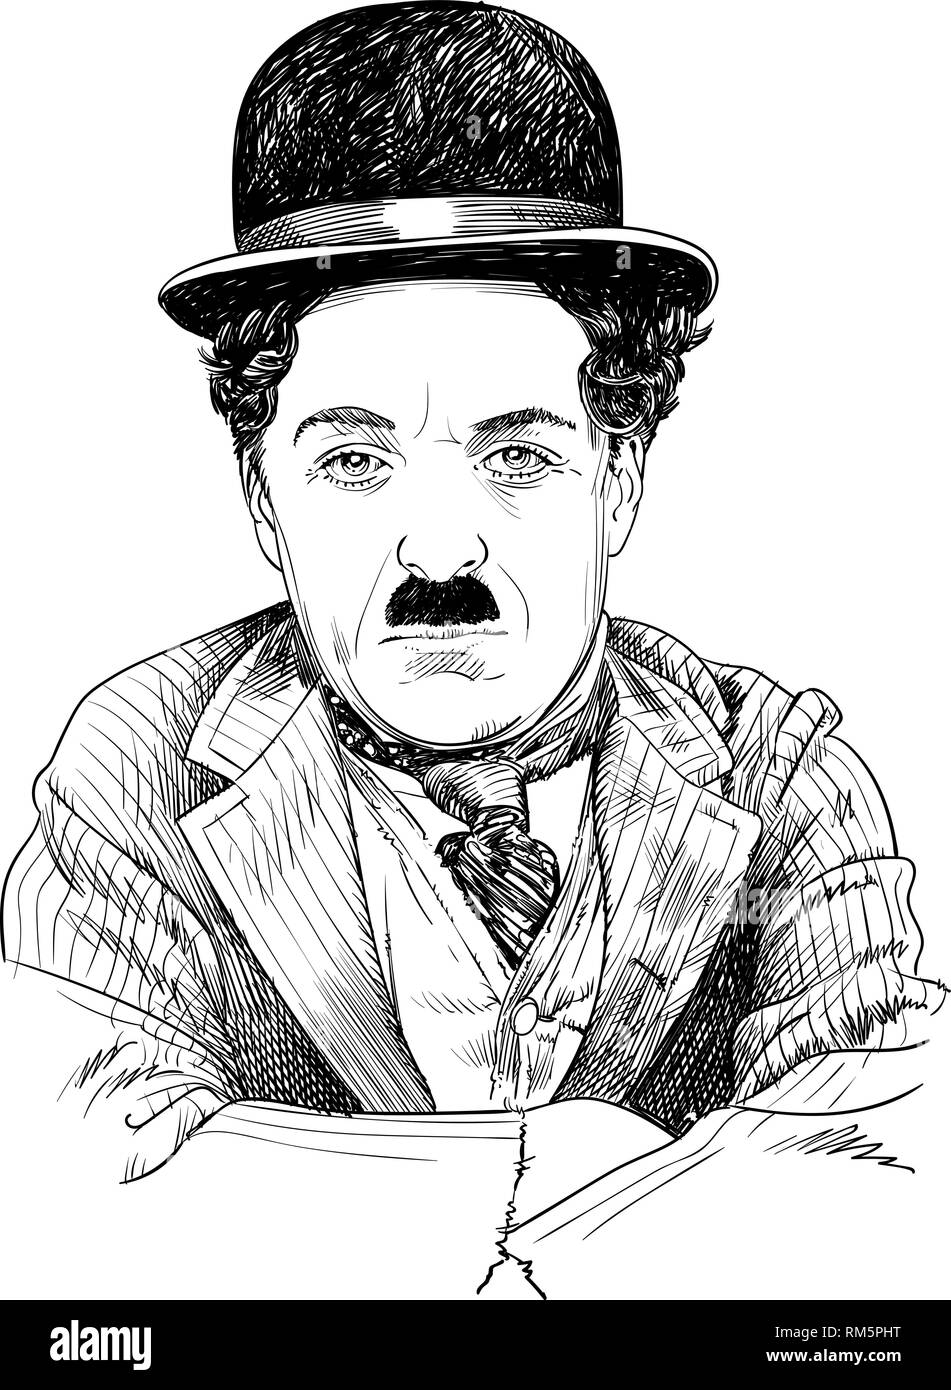 Charlie Chaplin retrato en line art illustration. Fue actor cómico Inglés, movie maker y compositor que saltó a la fama en la era de la película muda. Ilustración del Vector